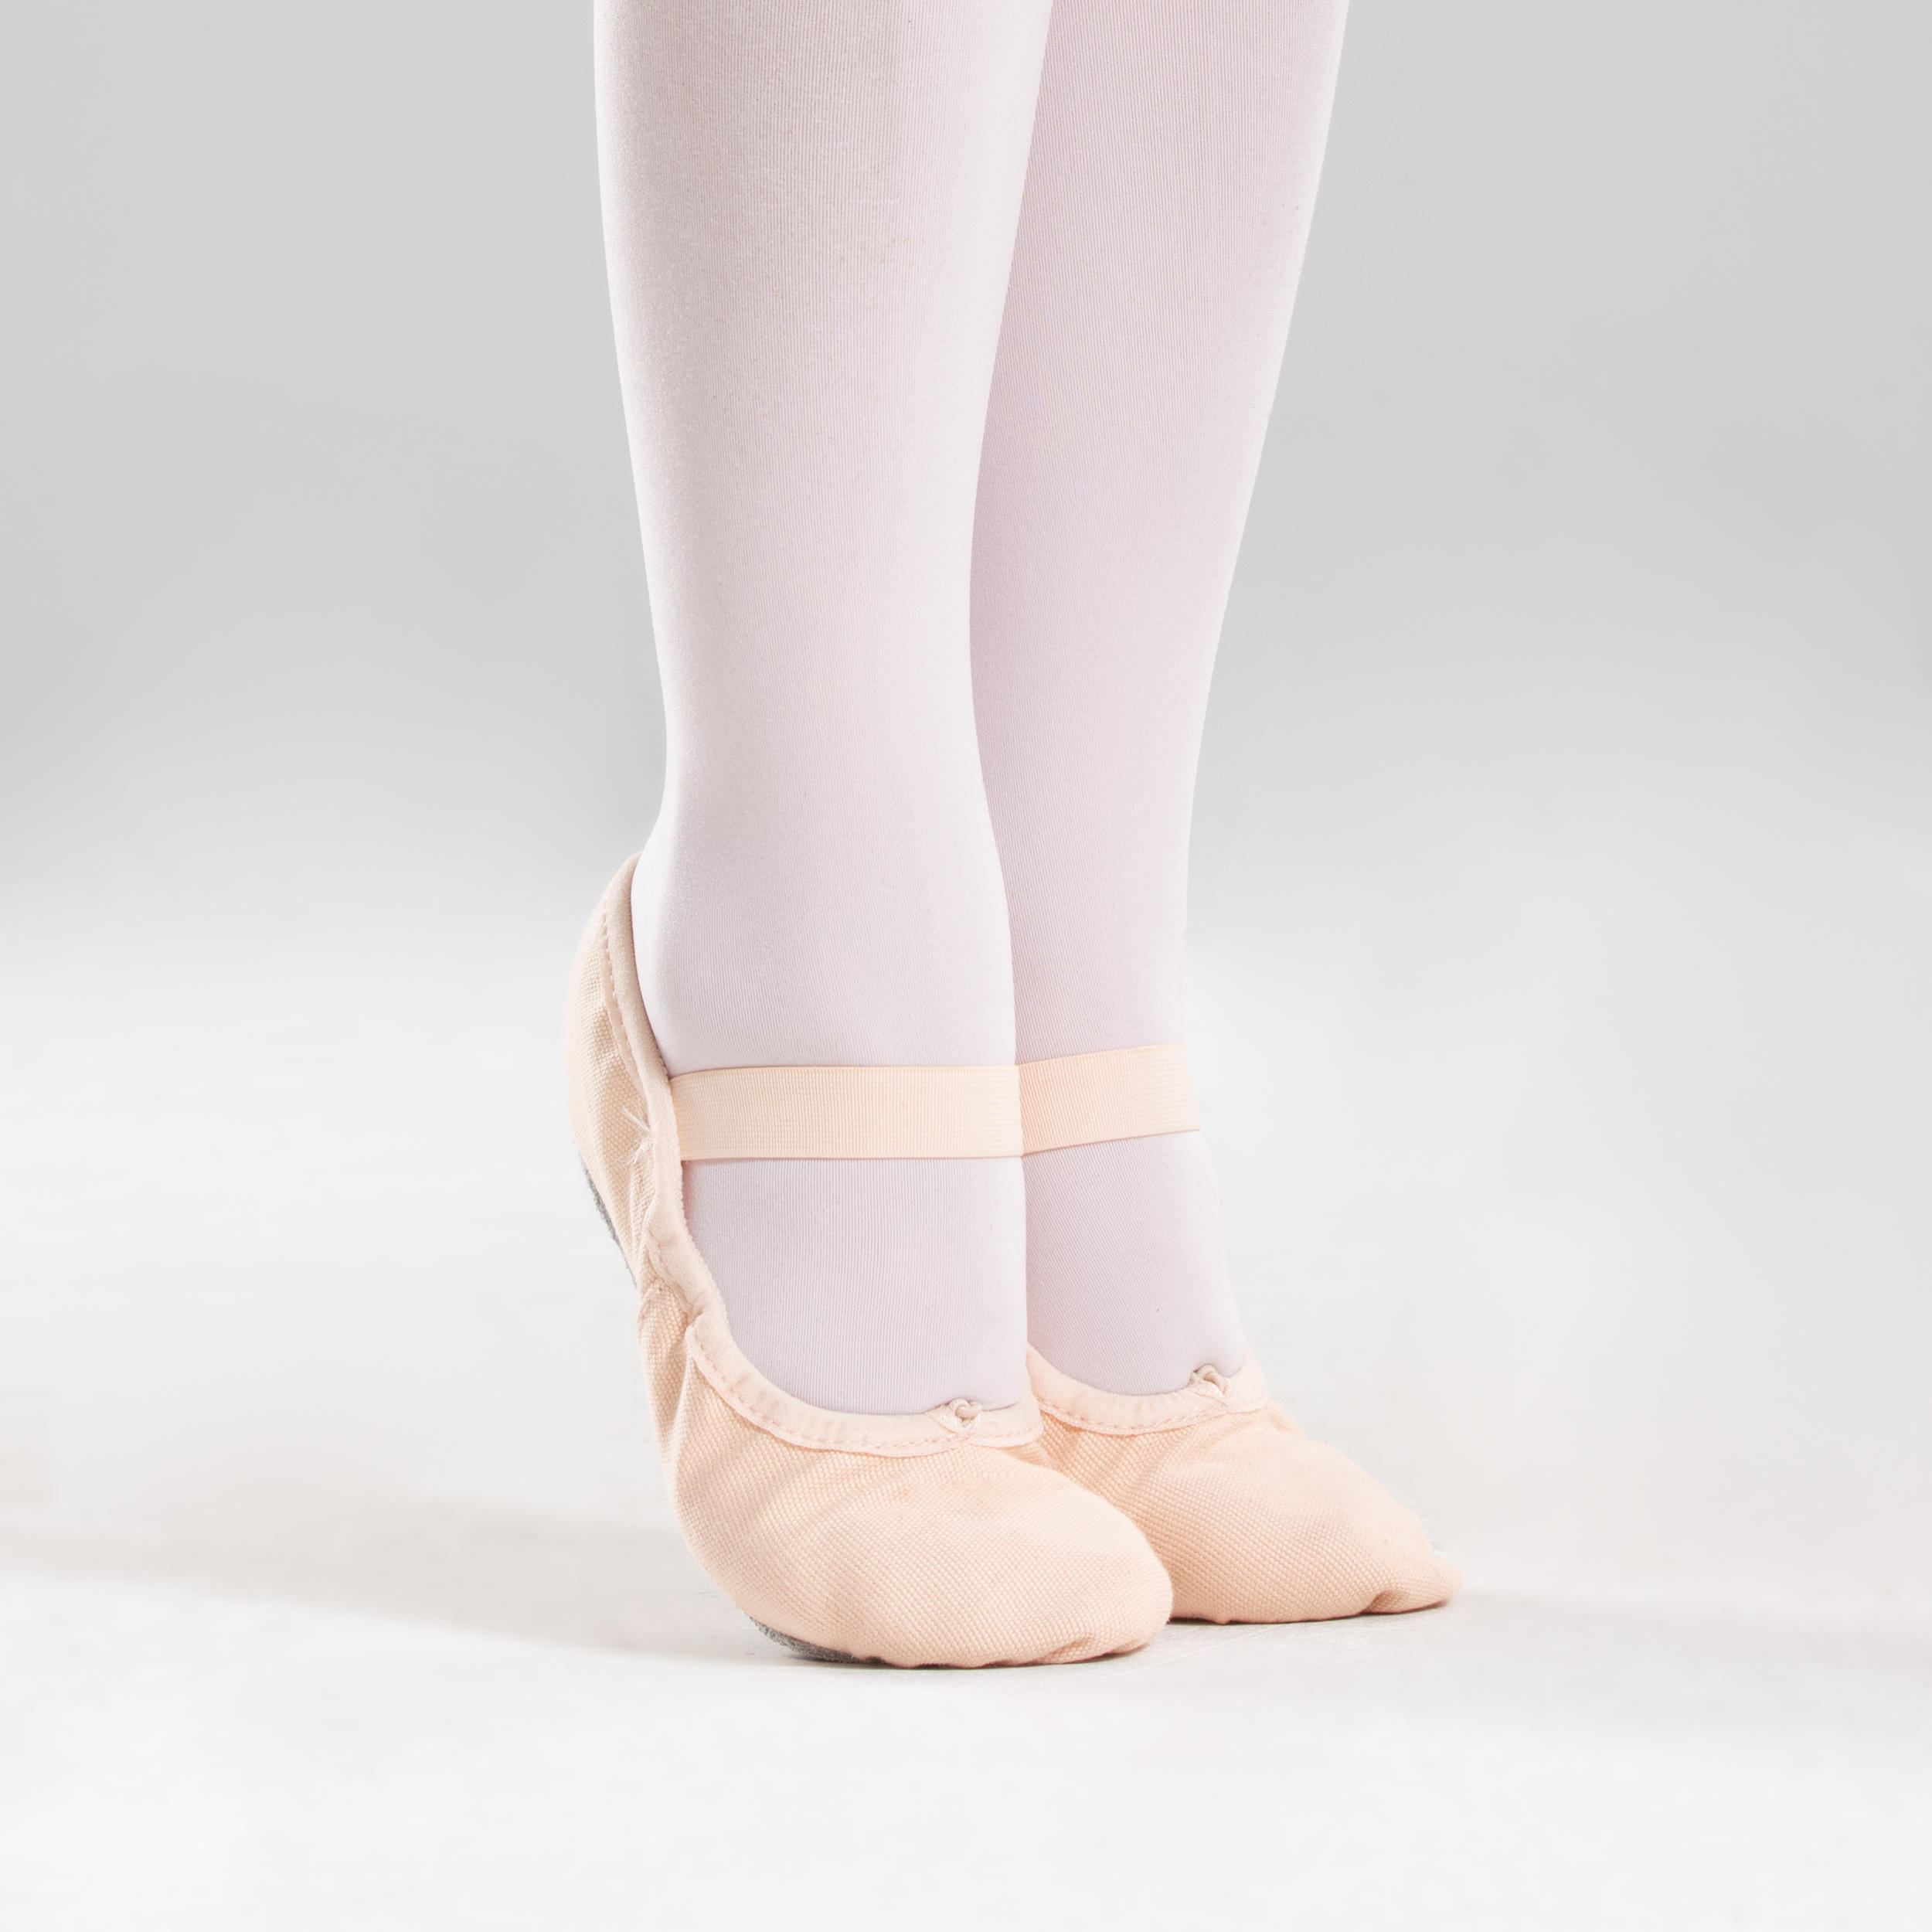 Balletschoen Handgemaakt Leer en Canvas Balletschoenen Volledige Zool Kinderdans Gymnastiek Schoenen Meisjesschoenen Dansschoenen 